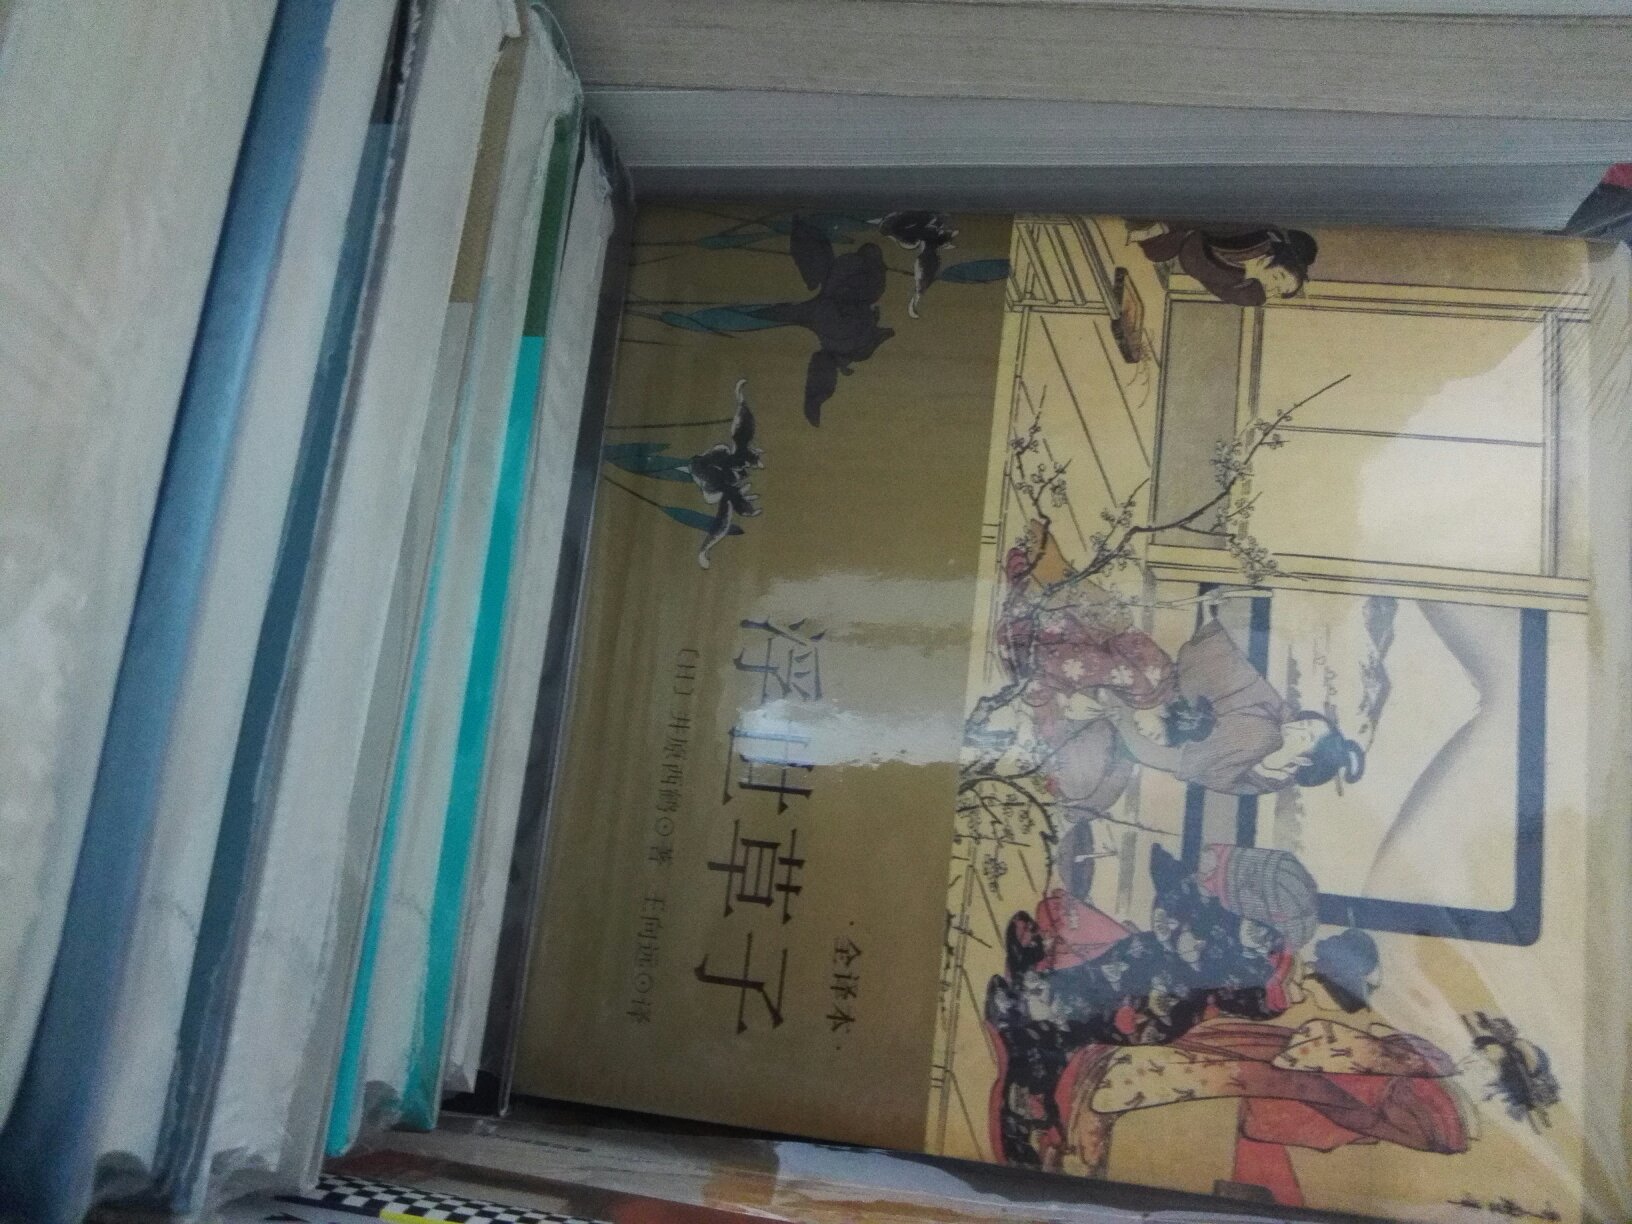 井原西鹤的“浮世草子”是继平安时代的《源氏物语》、镰仓时代的《平家物语》之后，形成的~古典小说的最后一个高峰，产生了很大影响。